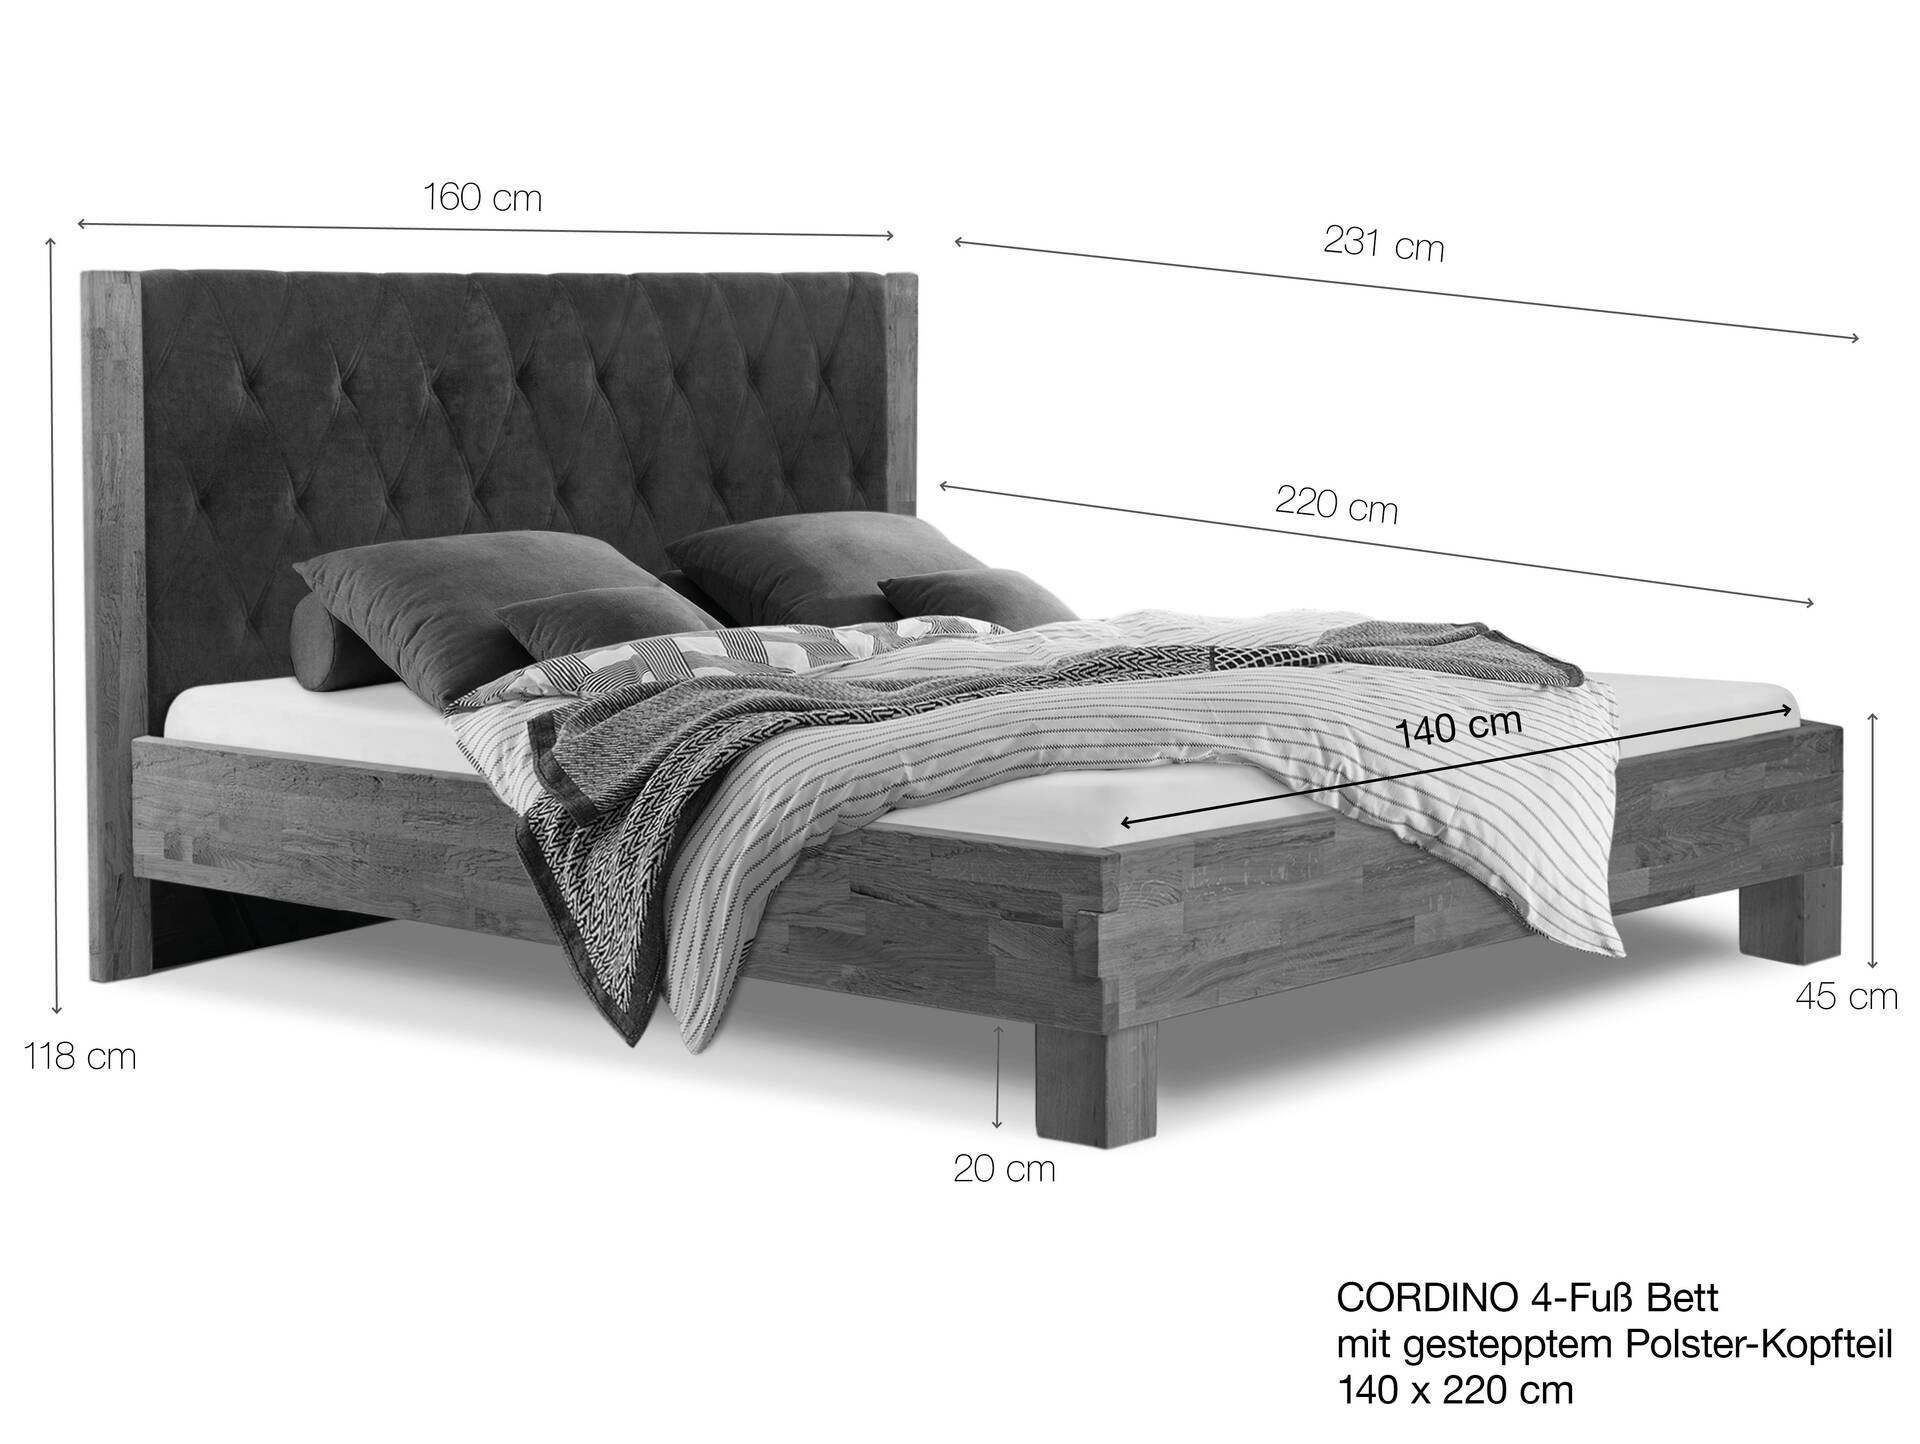 CORDINO 4-Fuß-Bett aus Eiche mit gestepptem Polster-Kopfteil, Material Massivholz 140 x 220 cm | Eiche unbehandelt | Stoff Anthrazit | gebürstet